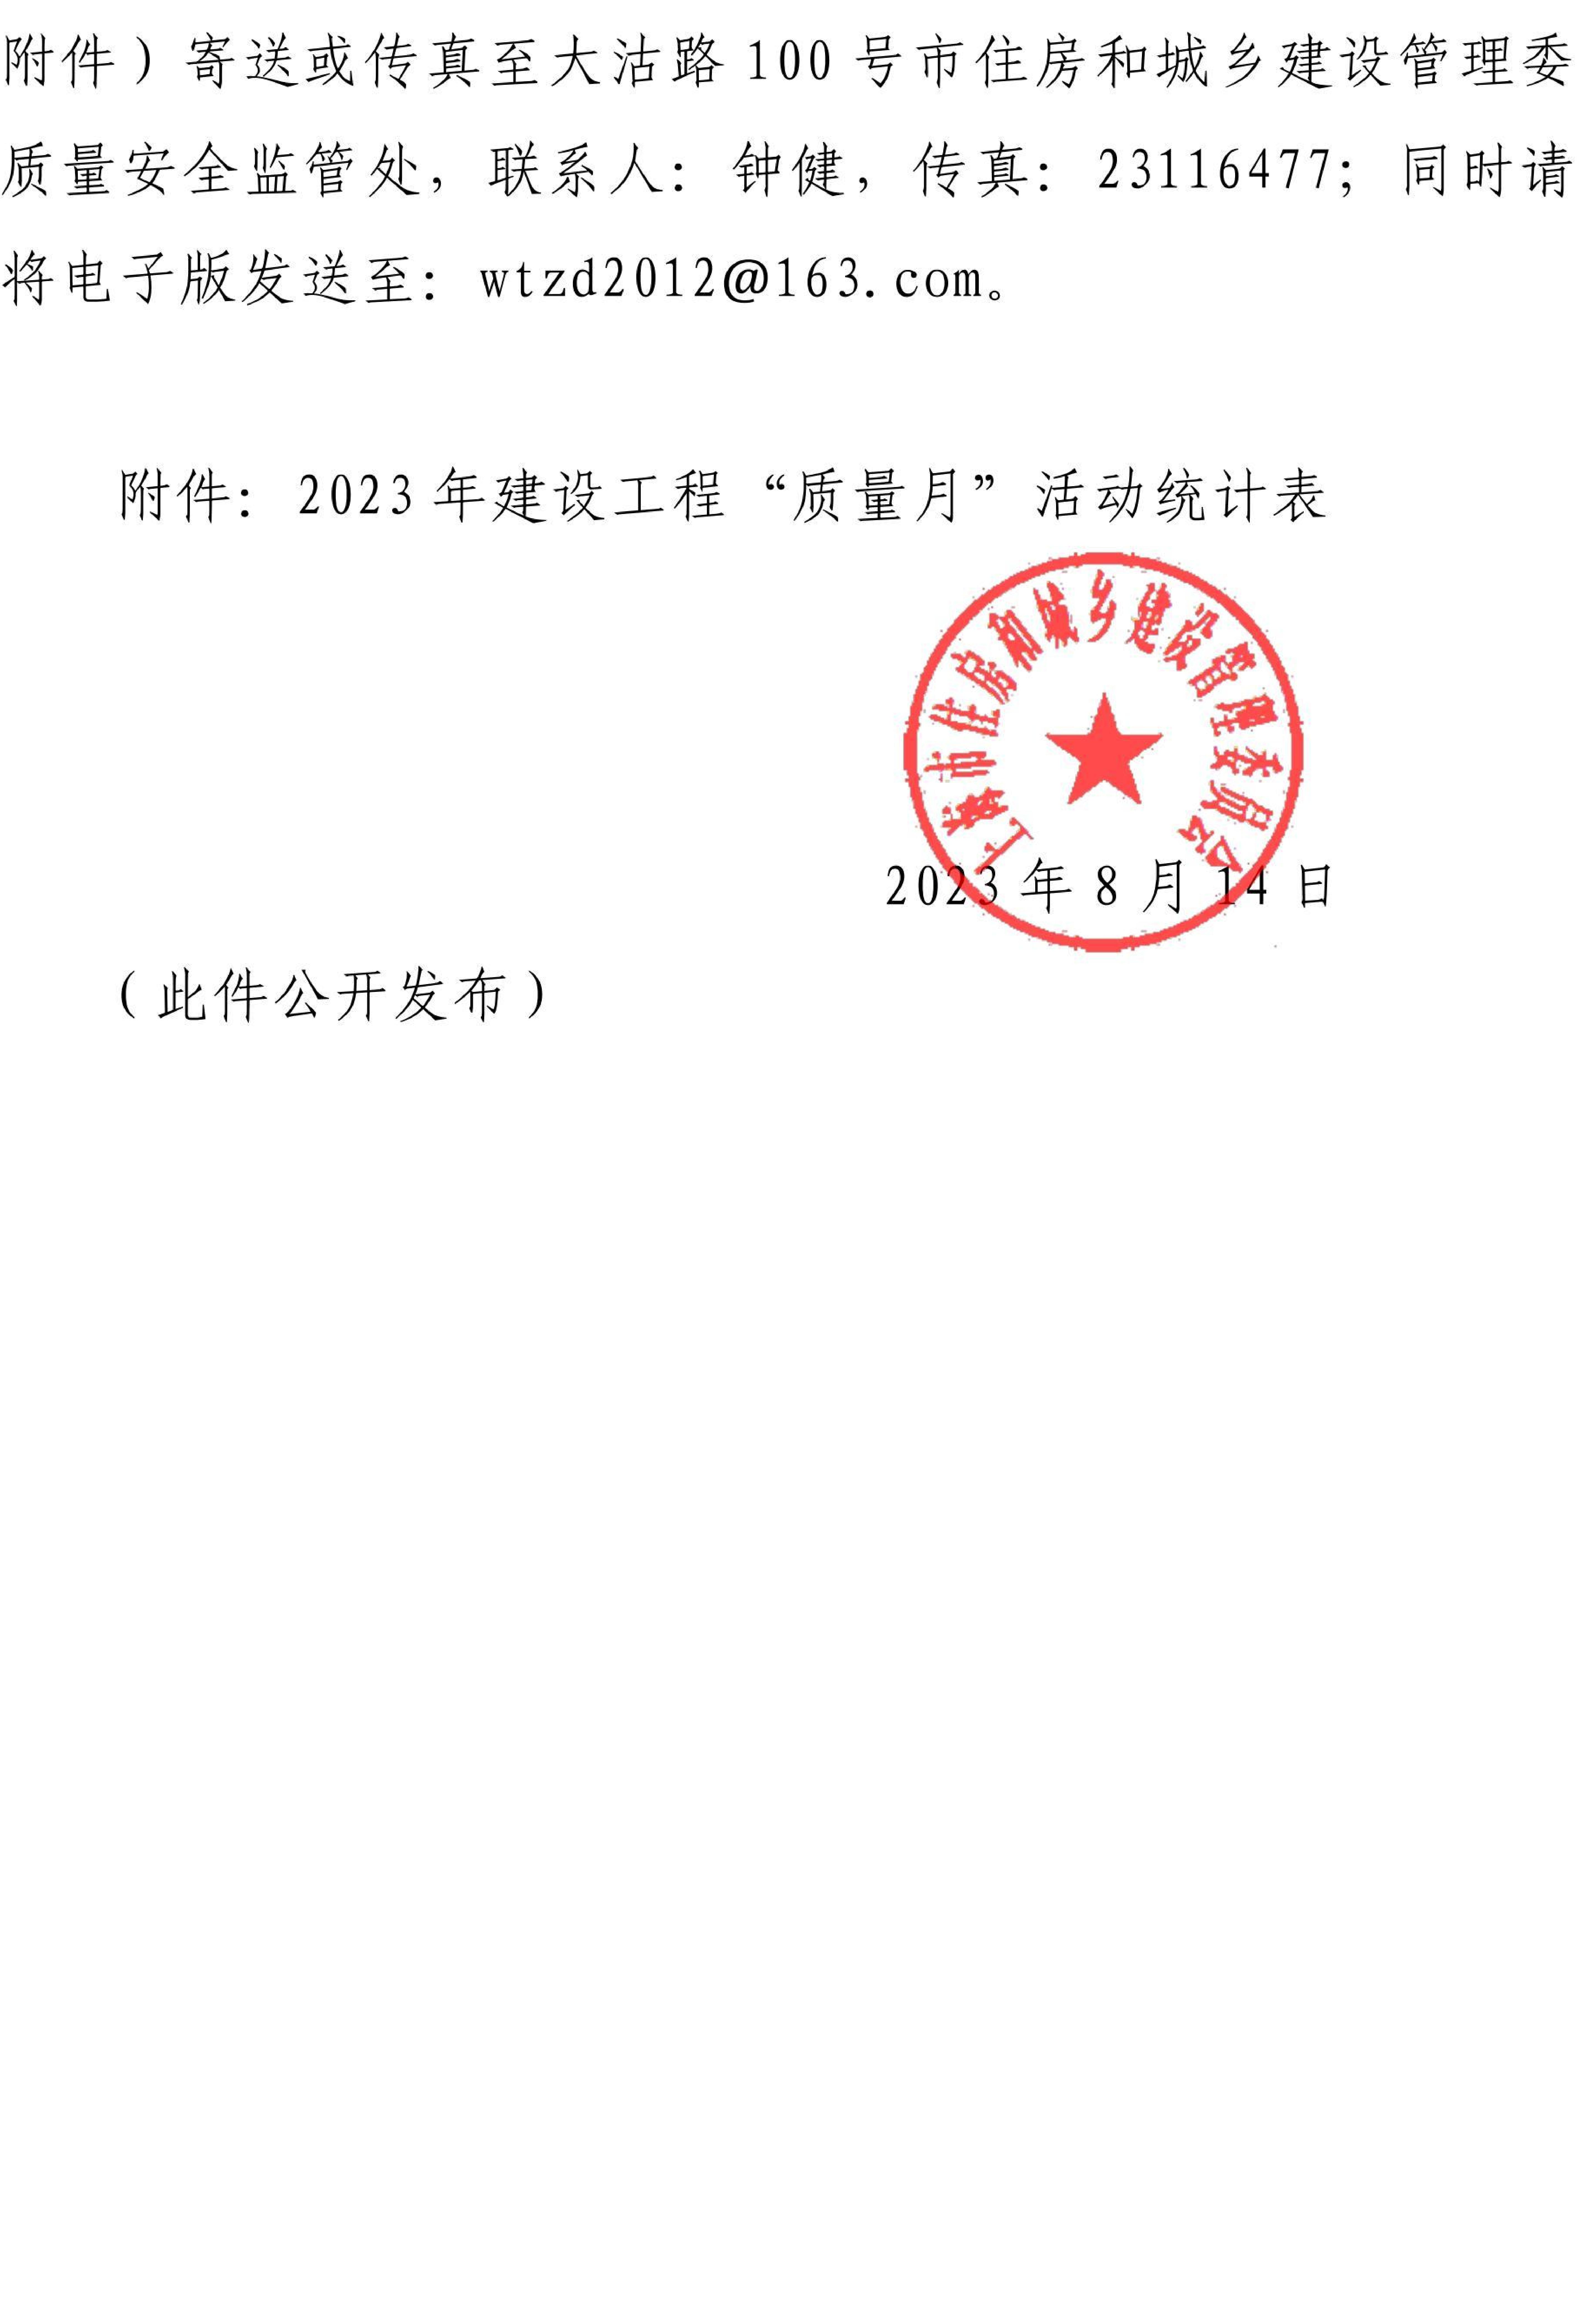 关于开展2023年上海市建设系统“质量月”活动的通知222_06.jpg